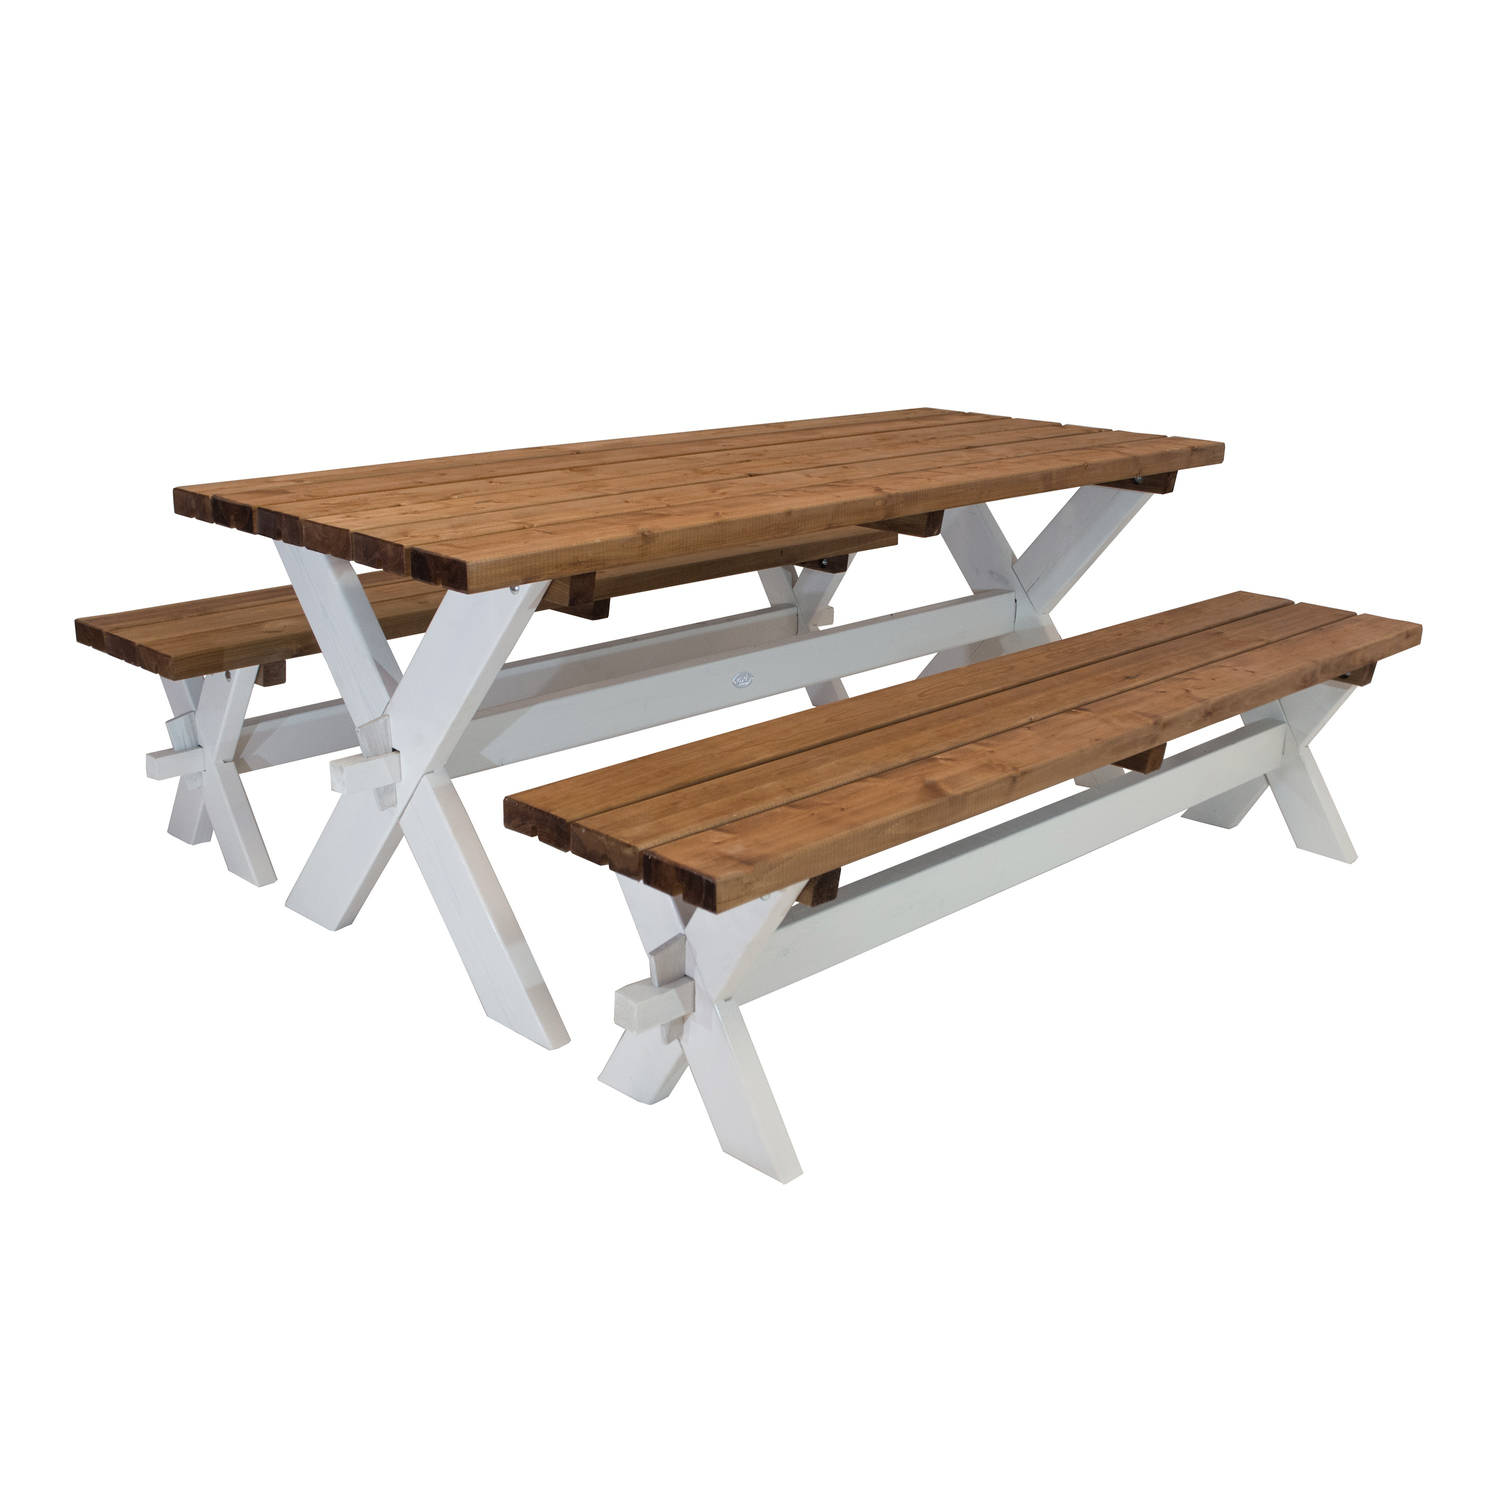 AXI Celine Picknicktafel met bankjes van hout in bruin & wit voor max 6 personen Picknick set voor v